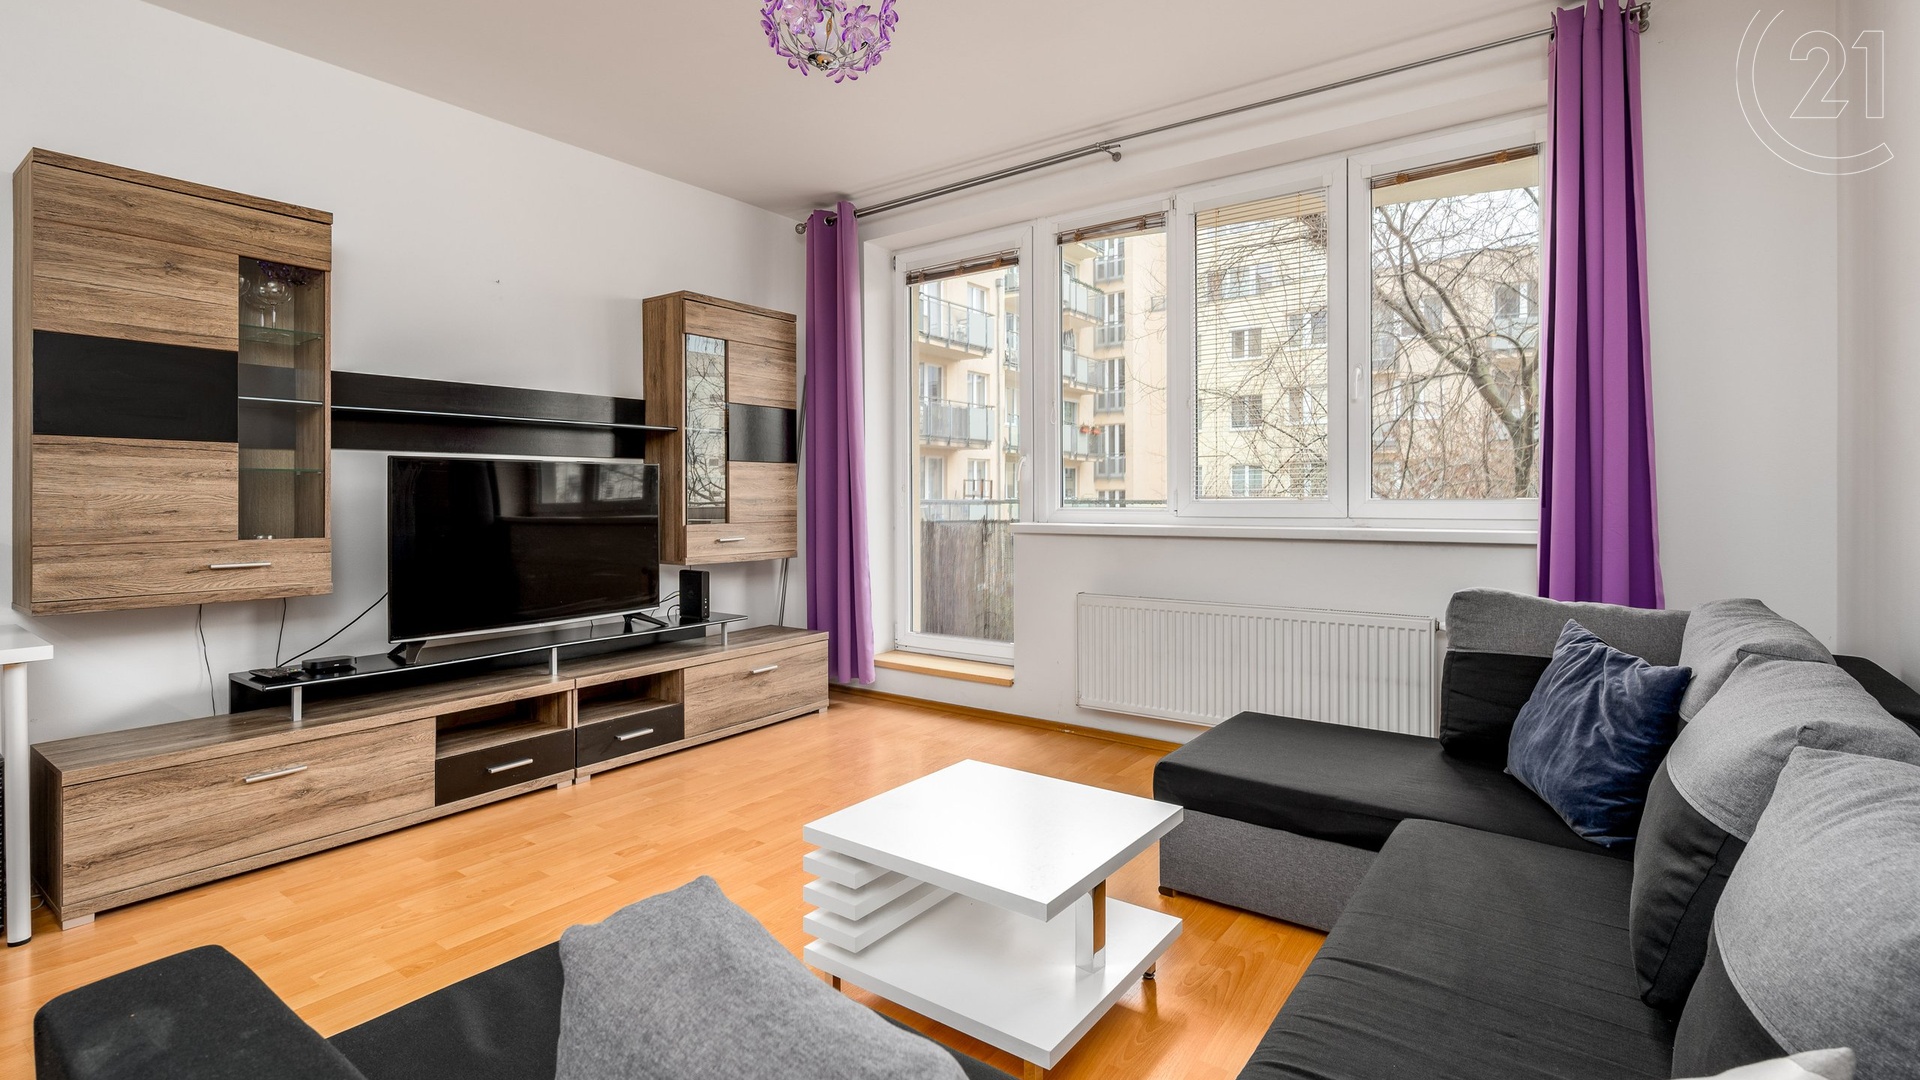 Pronájem bytu 2+kk s balkonem a komorou, 57 m², P10 - Hostivař, projekt Slunečný Vršek, ulice Rižská